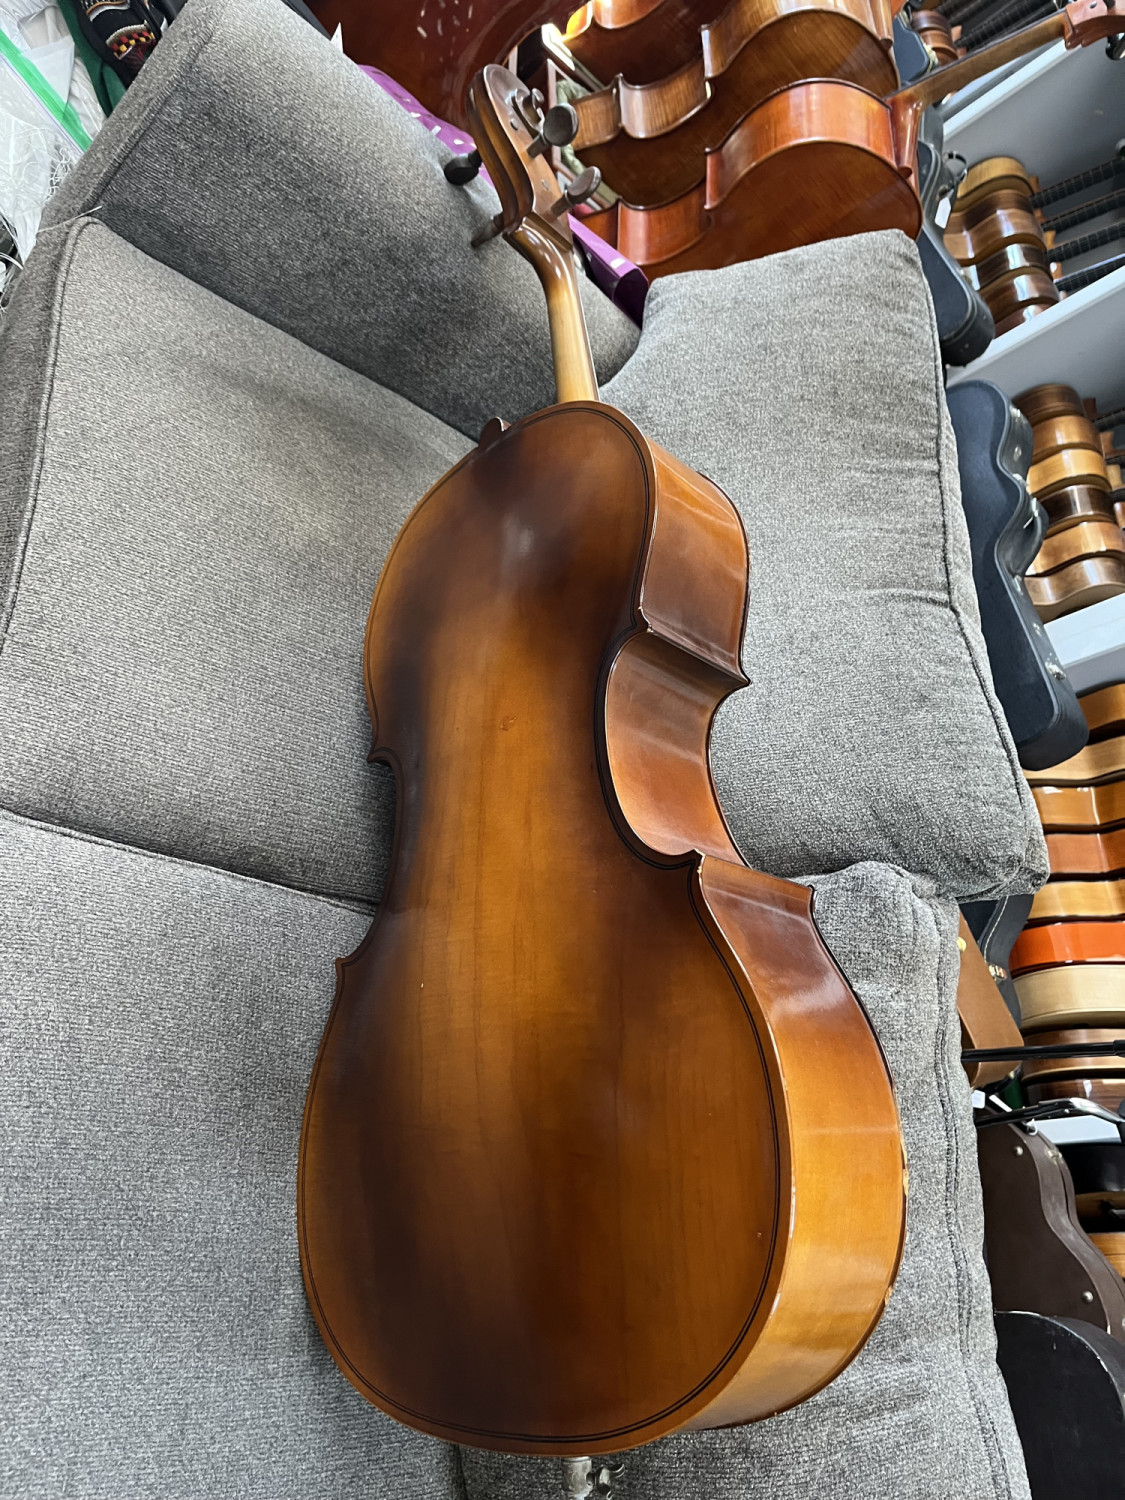 1950's Kay Cello 4/4